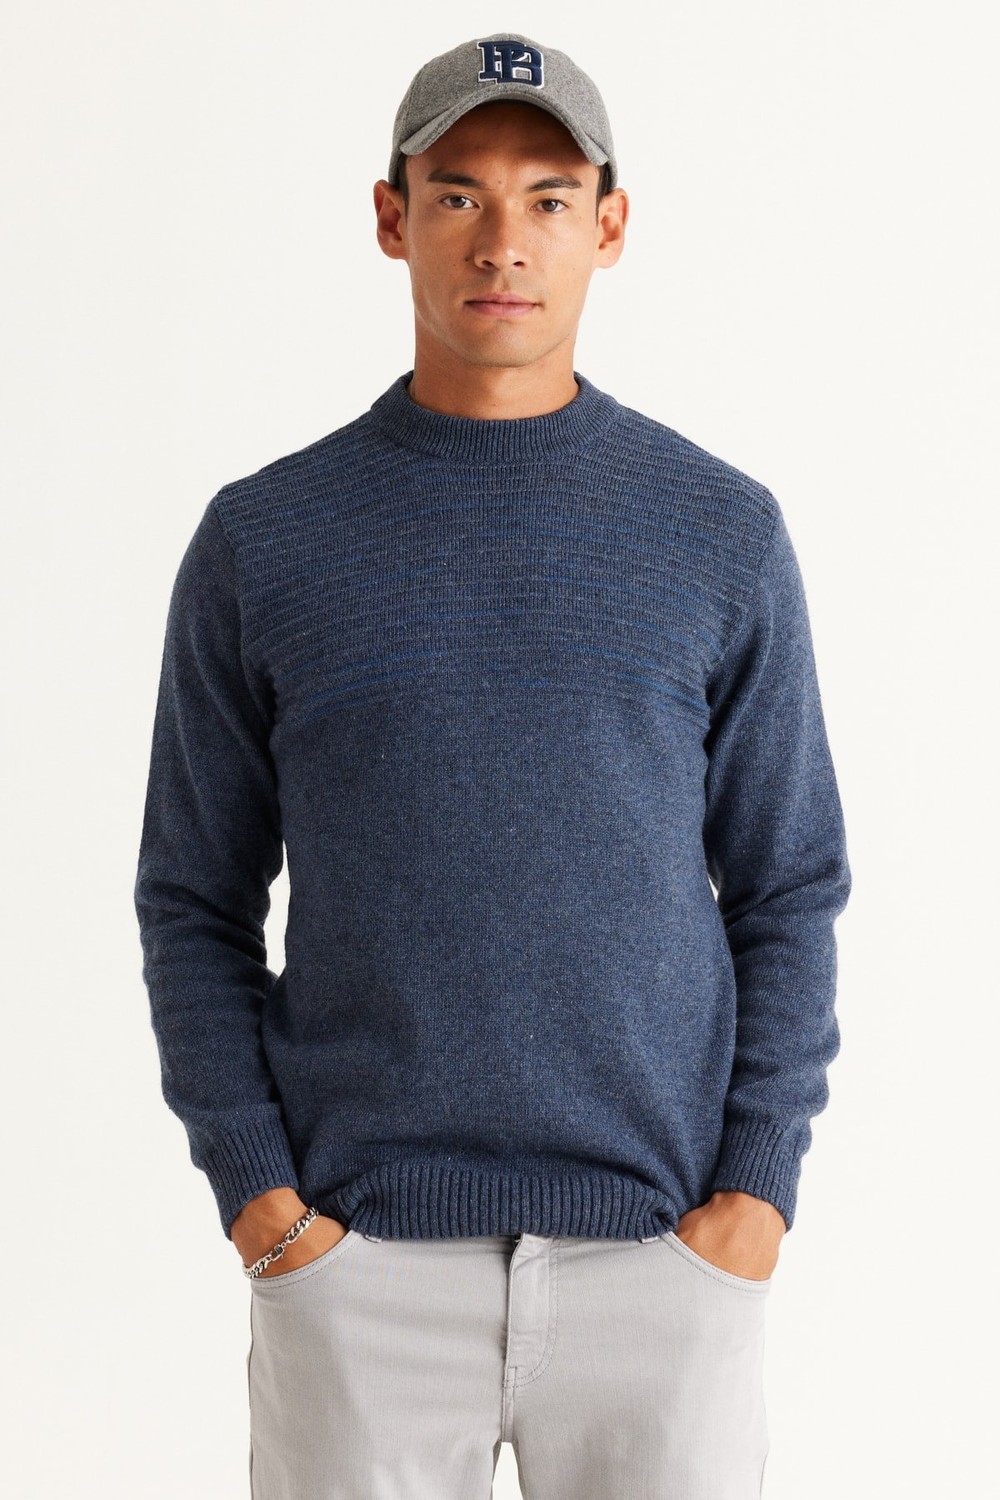 AC&Co / Altınyıldız Classics Men's Aviator Blue-petrol Standard Fit Normal Cut Half Turtleneck Woolen Knitwear Sweater.